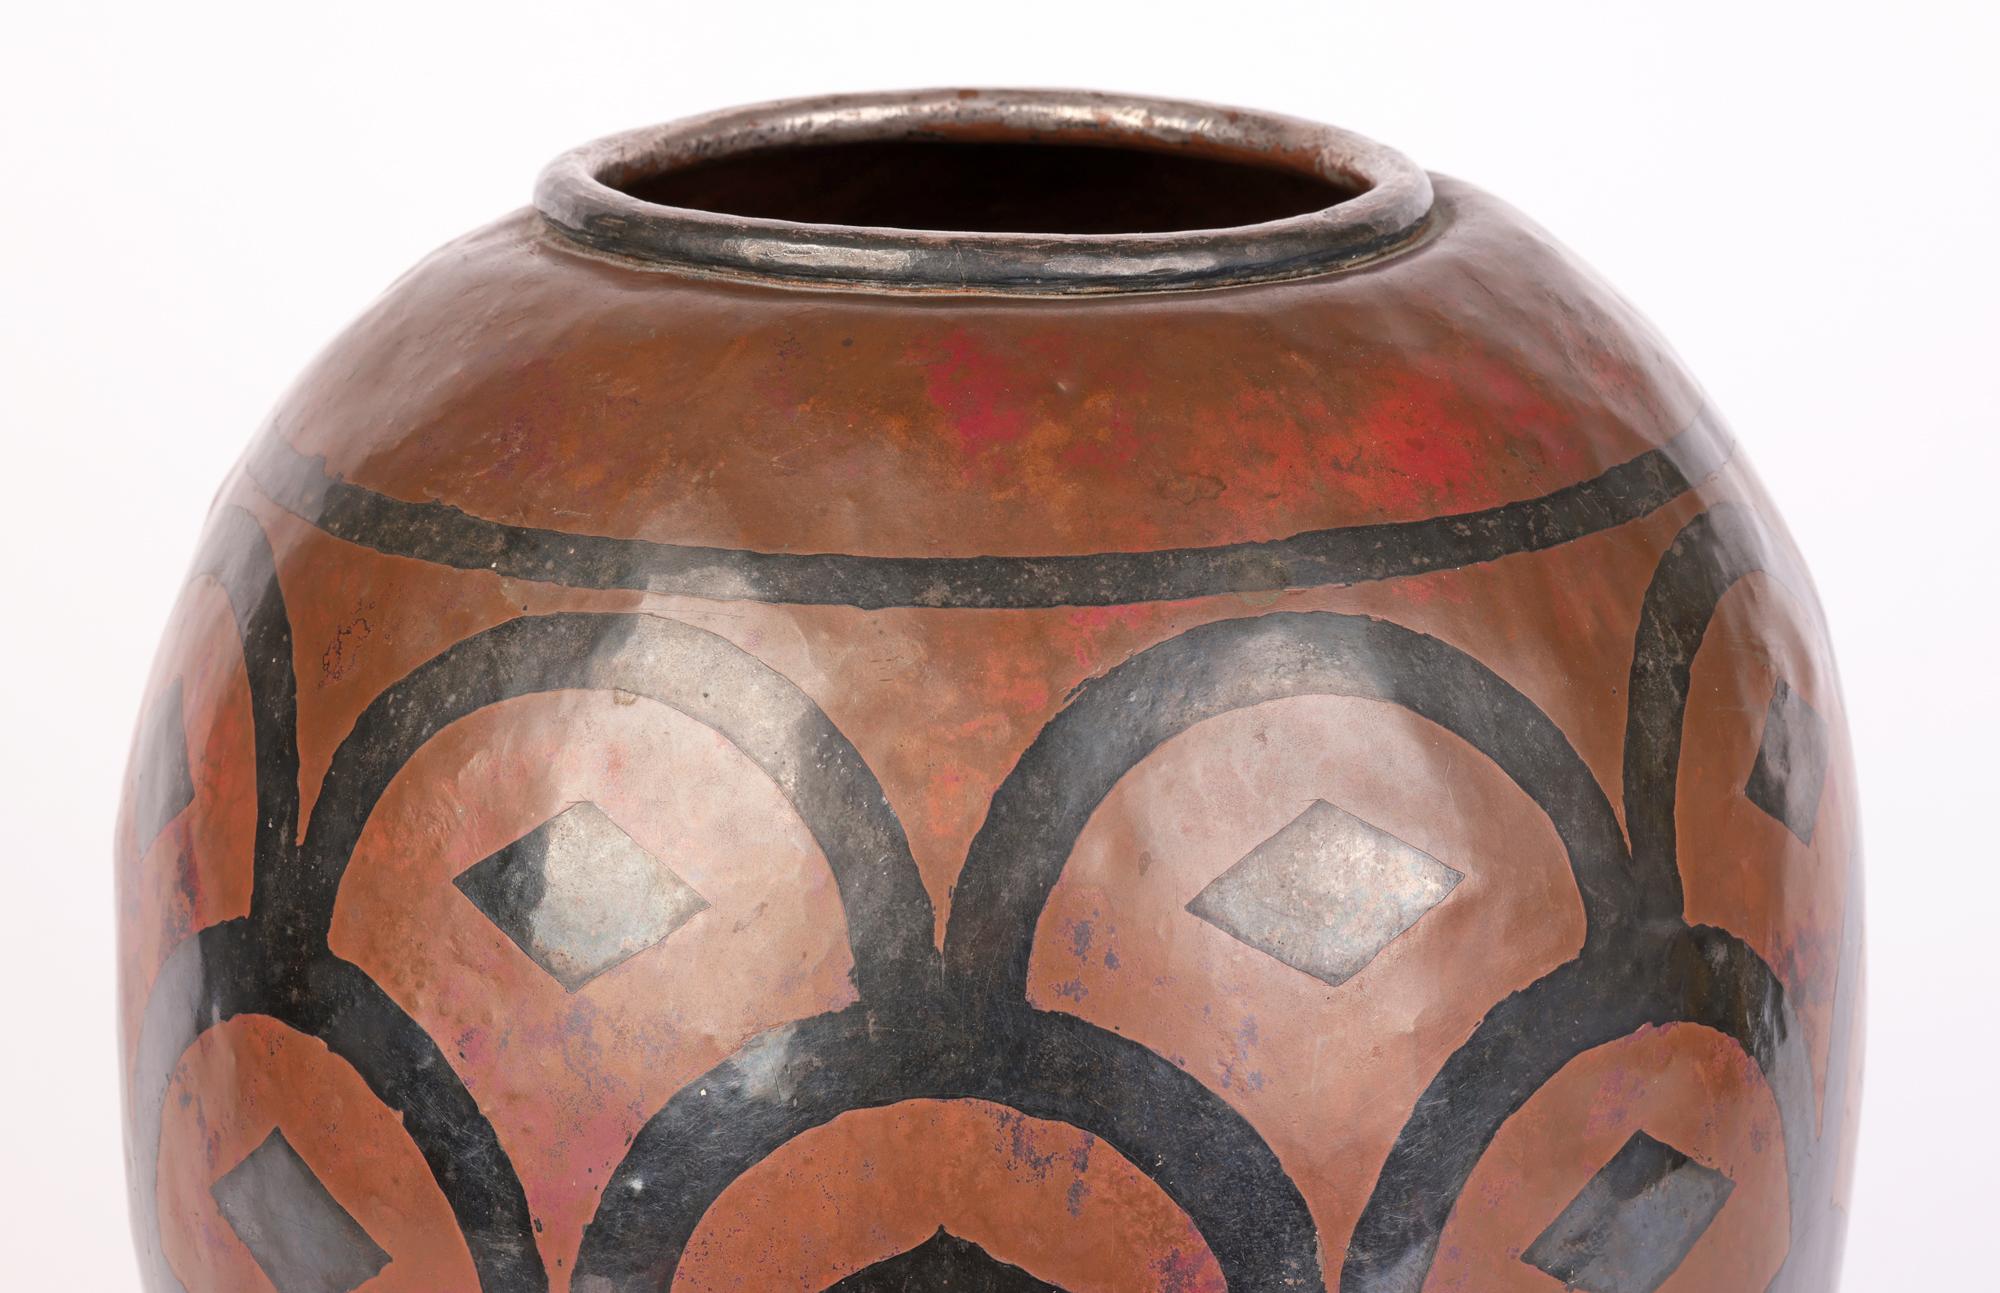 Un grand et élégant vase en cuivre Art Nouveau français décoré d'un motif de superposition d'argent signé Dubois et datant d'environ 1900. Le grand vase de forme bulbeuse repose sur une base ronde plate et étroite et est fabriqué à la main avec un